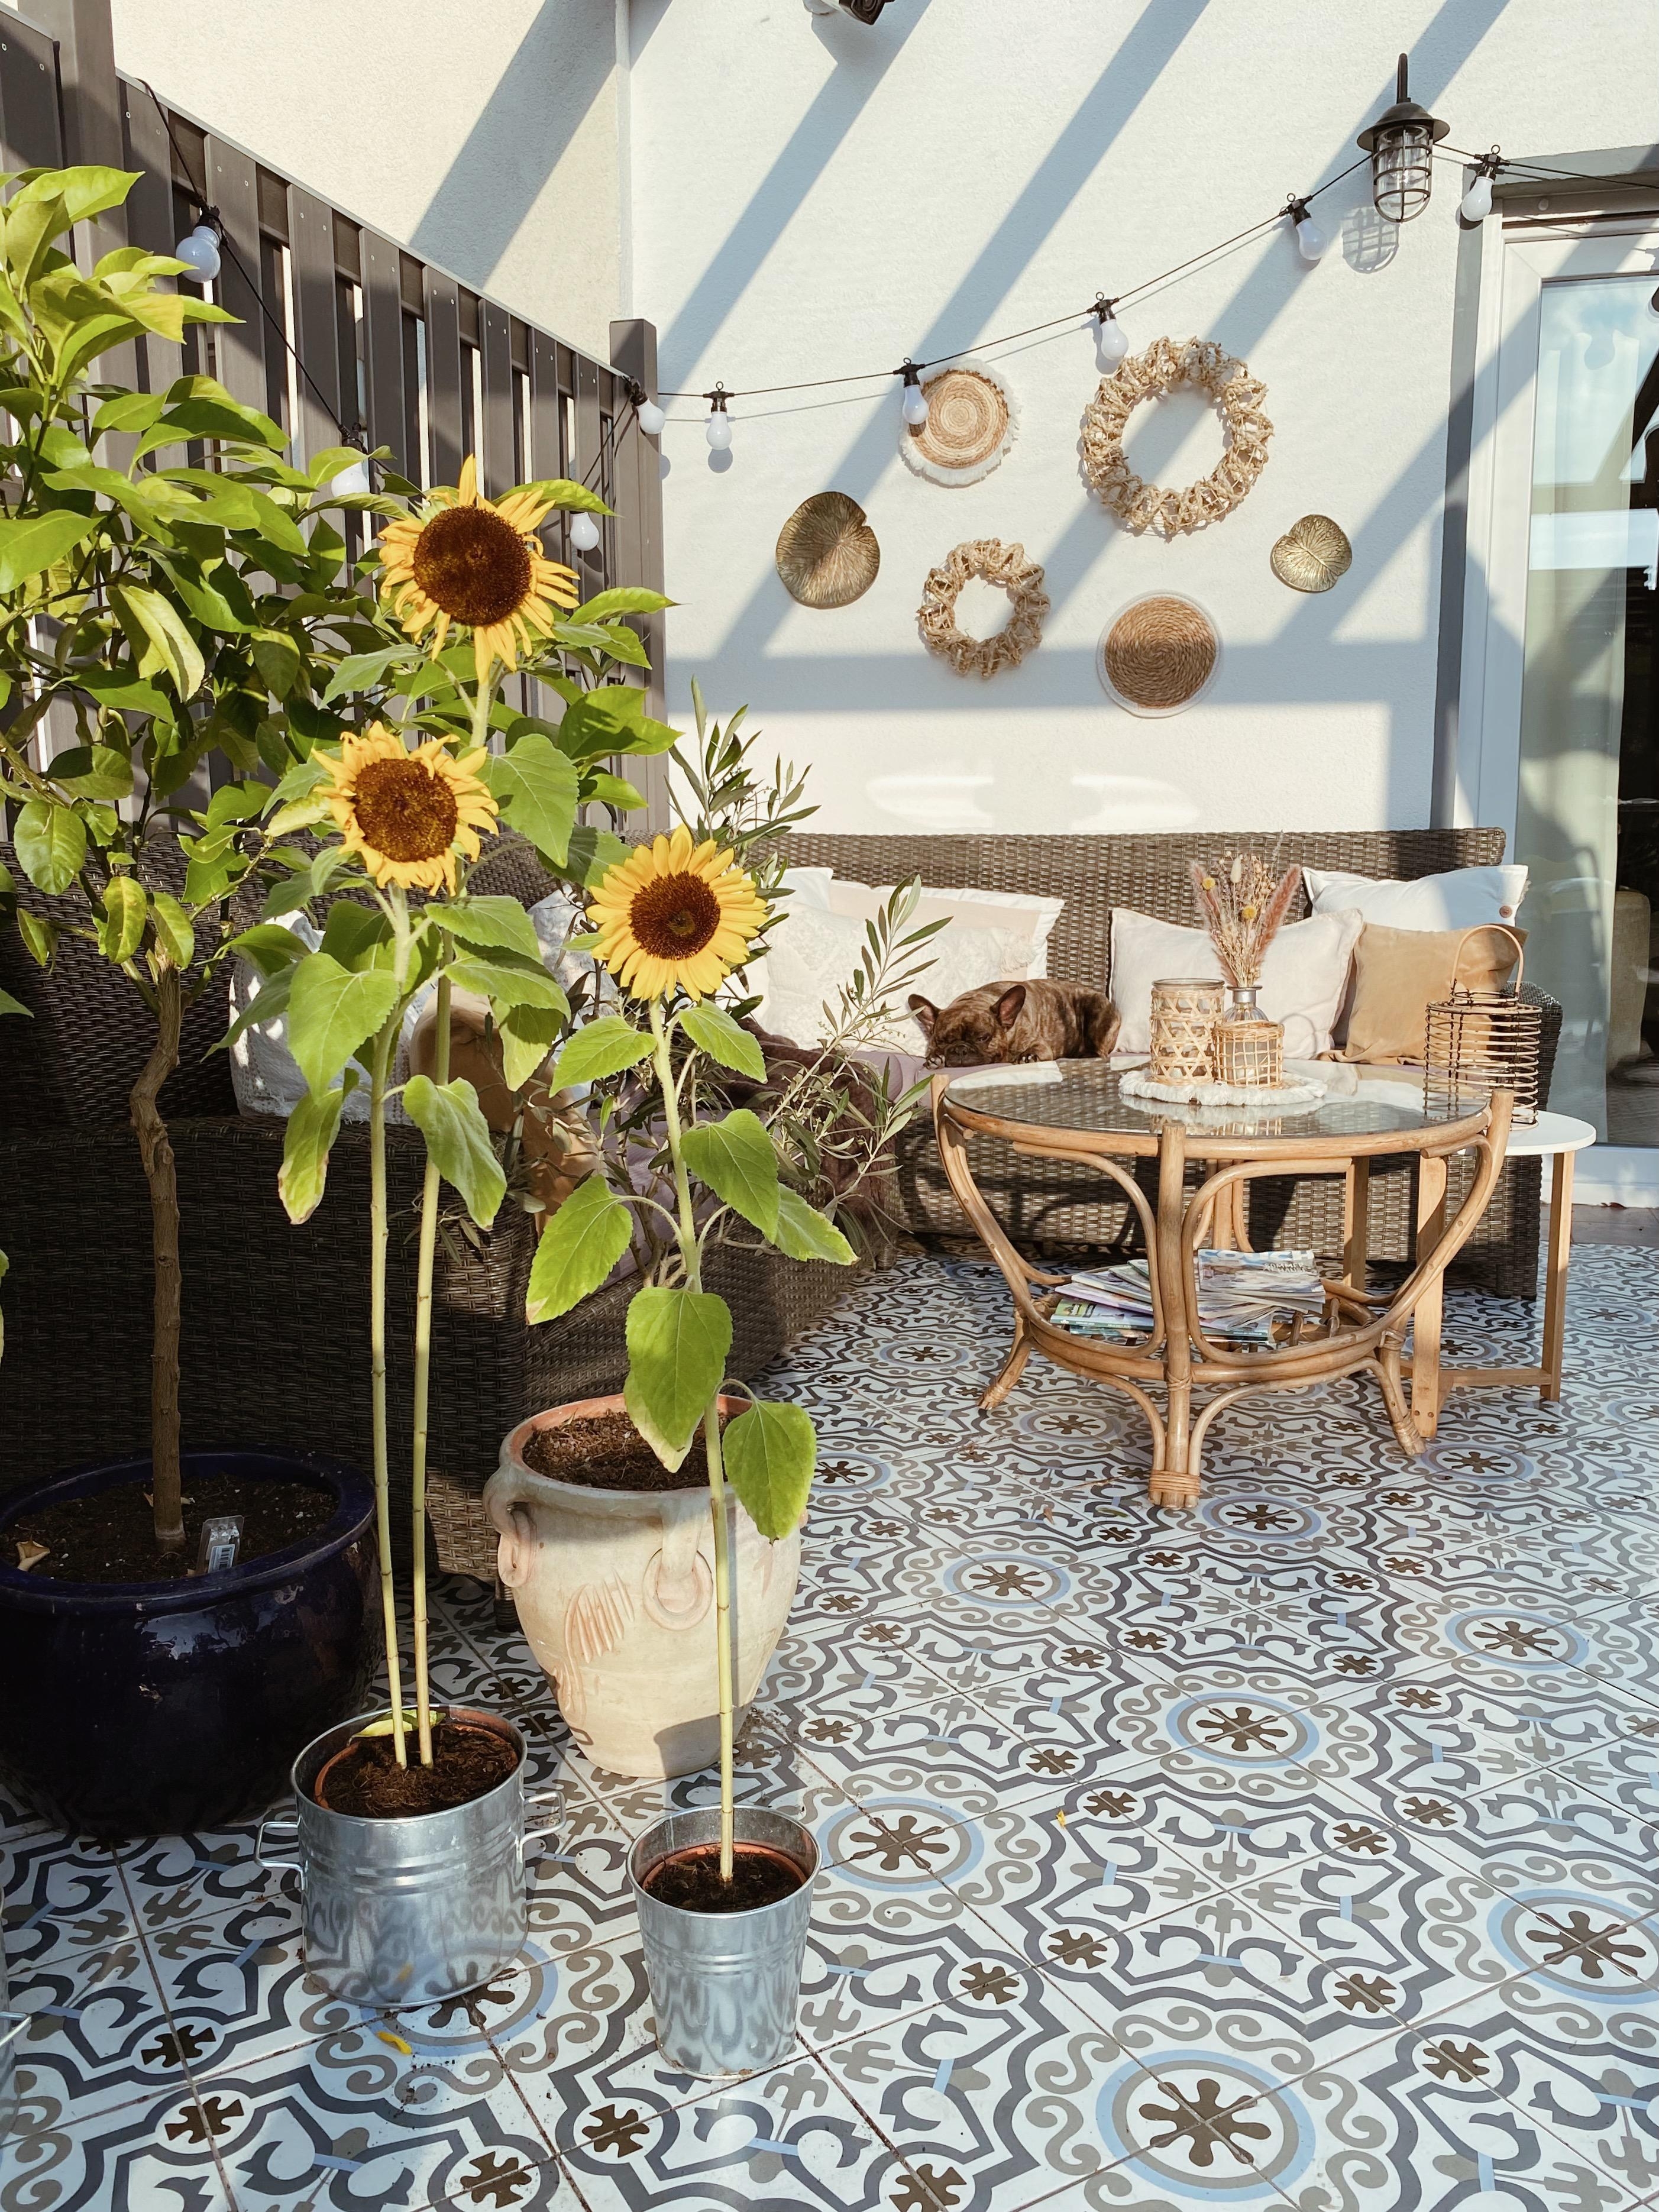 Sommer, Sonne, Sonnenblumen...💛🌤🌻 & Ludwig 🐶
#terrasse#terrassengestaltung#garten#outdoorinterior